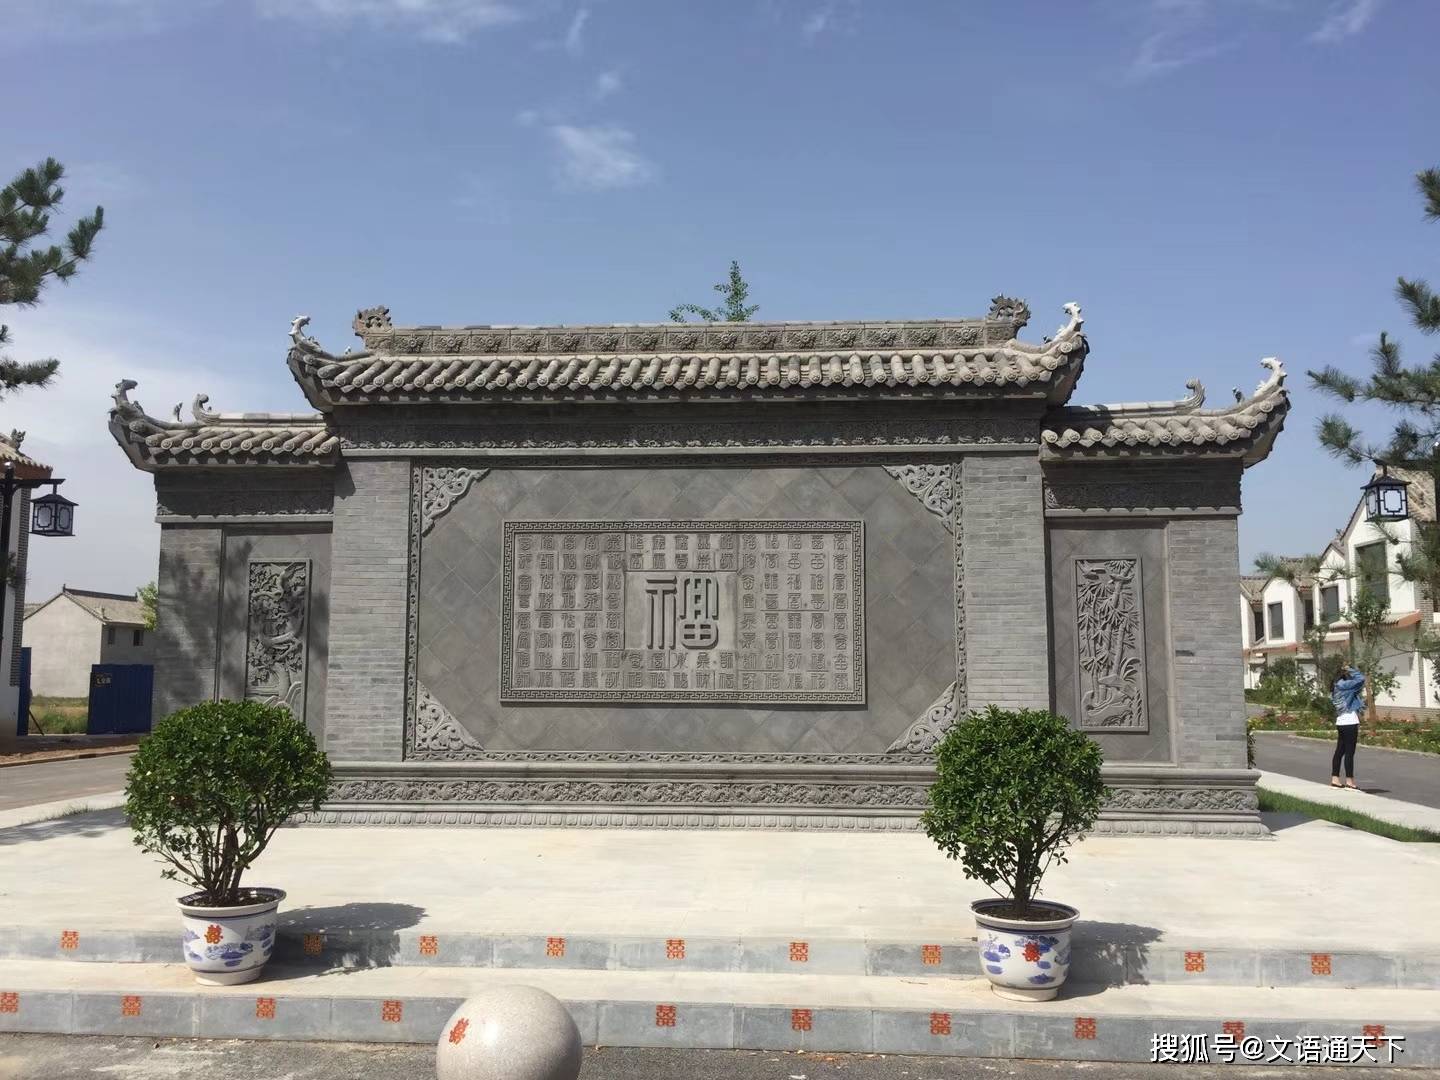 2021年新中式庭院影壁墙背景墙设计案例分享方寸之间尽显中国传统文化